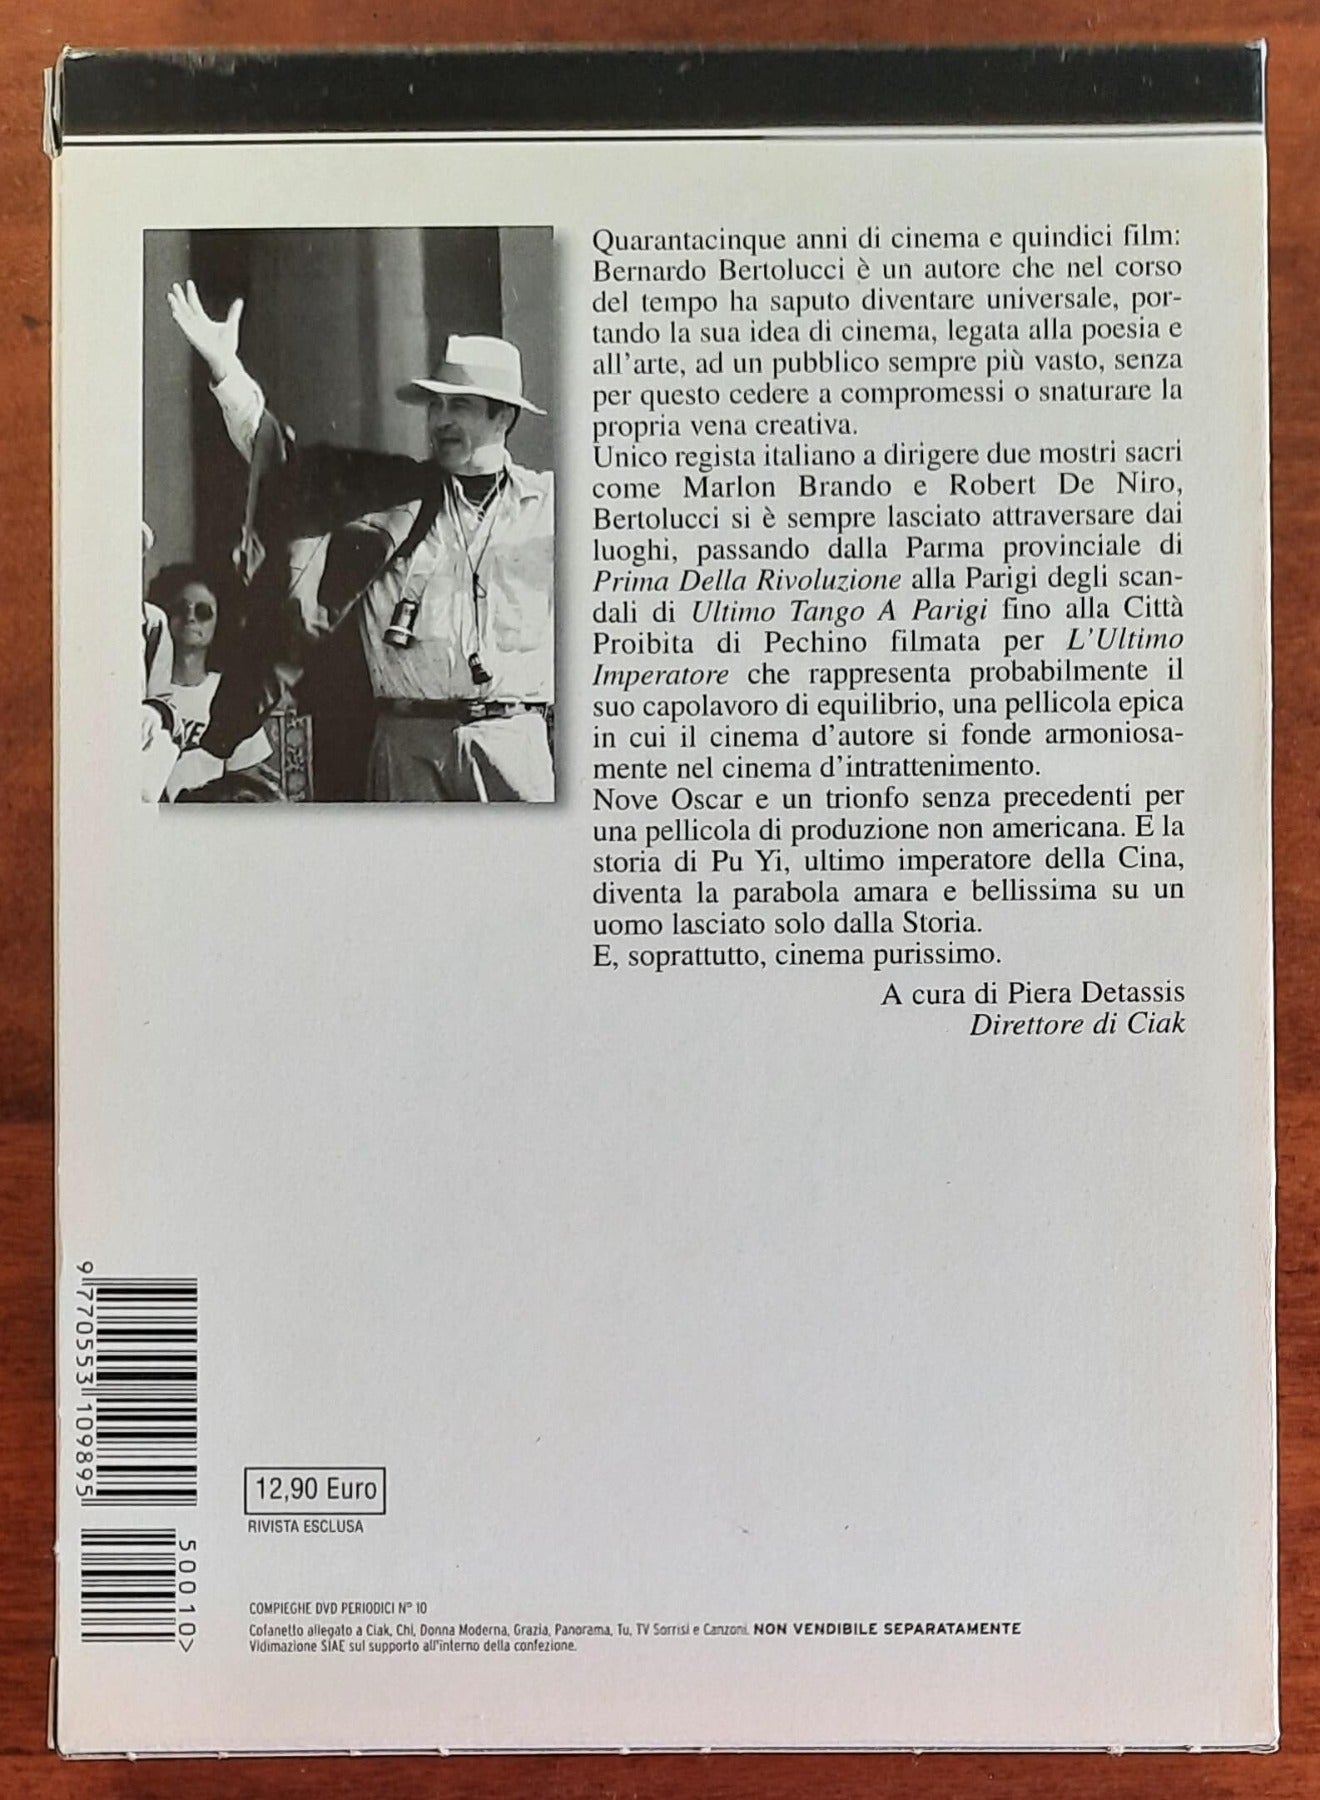 DVD + libro: L'ultimo imperatore di Bernardo Bertolucci